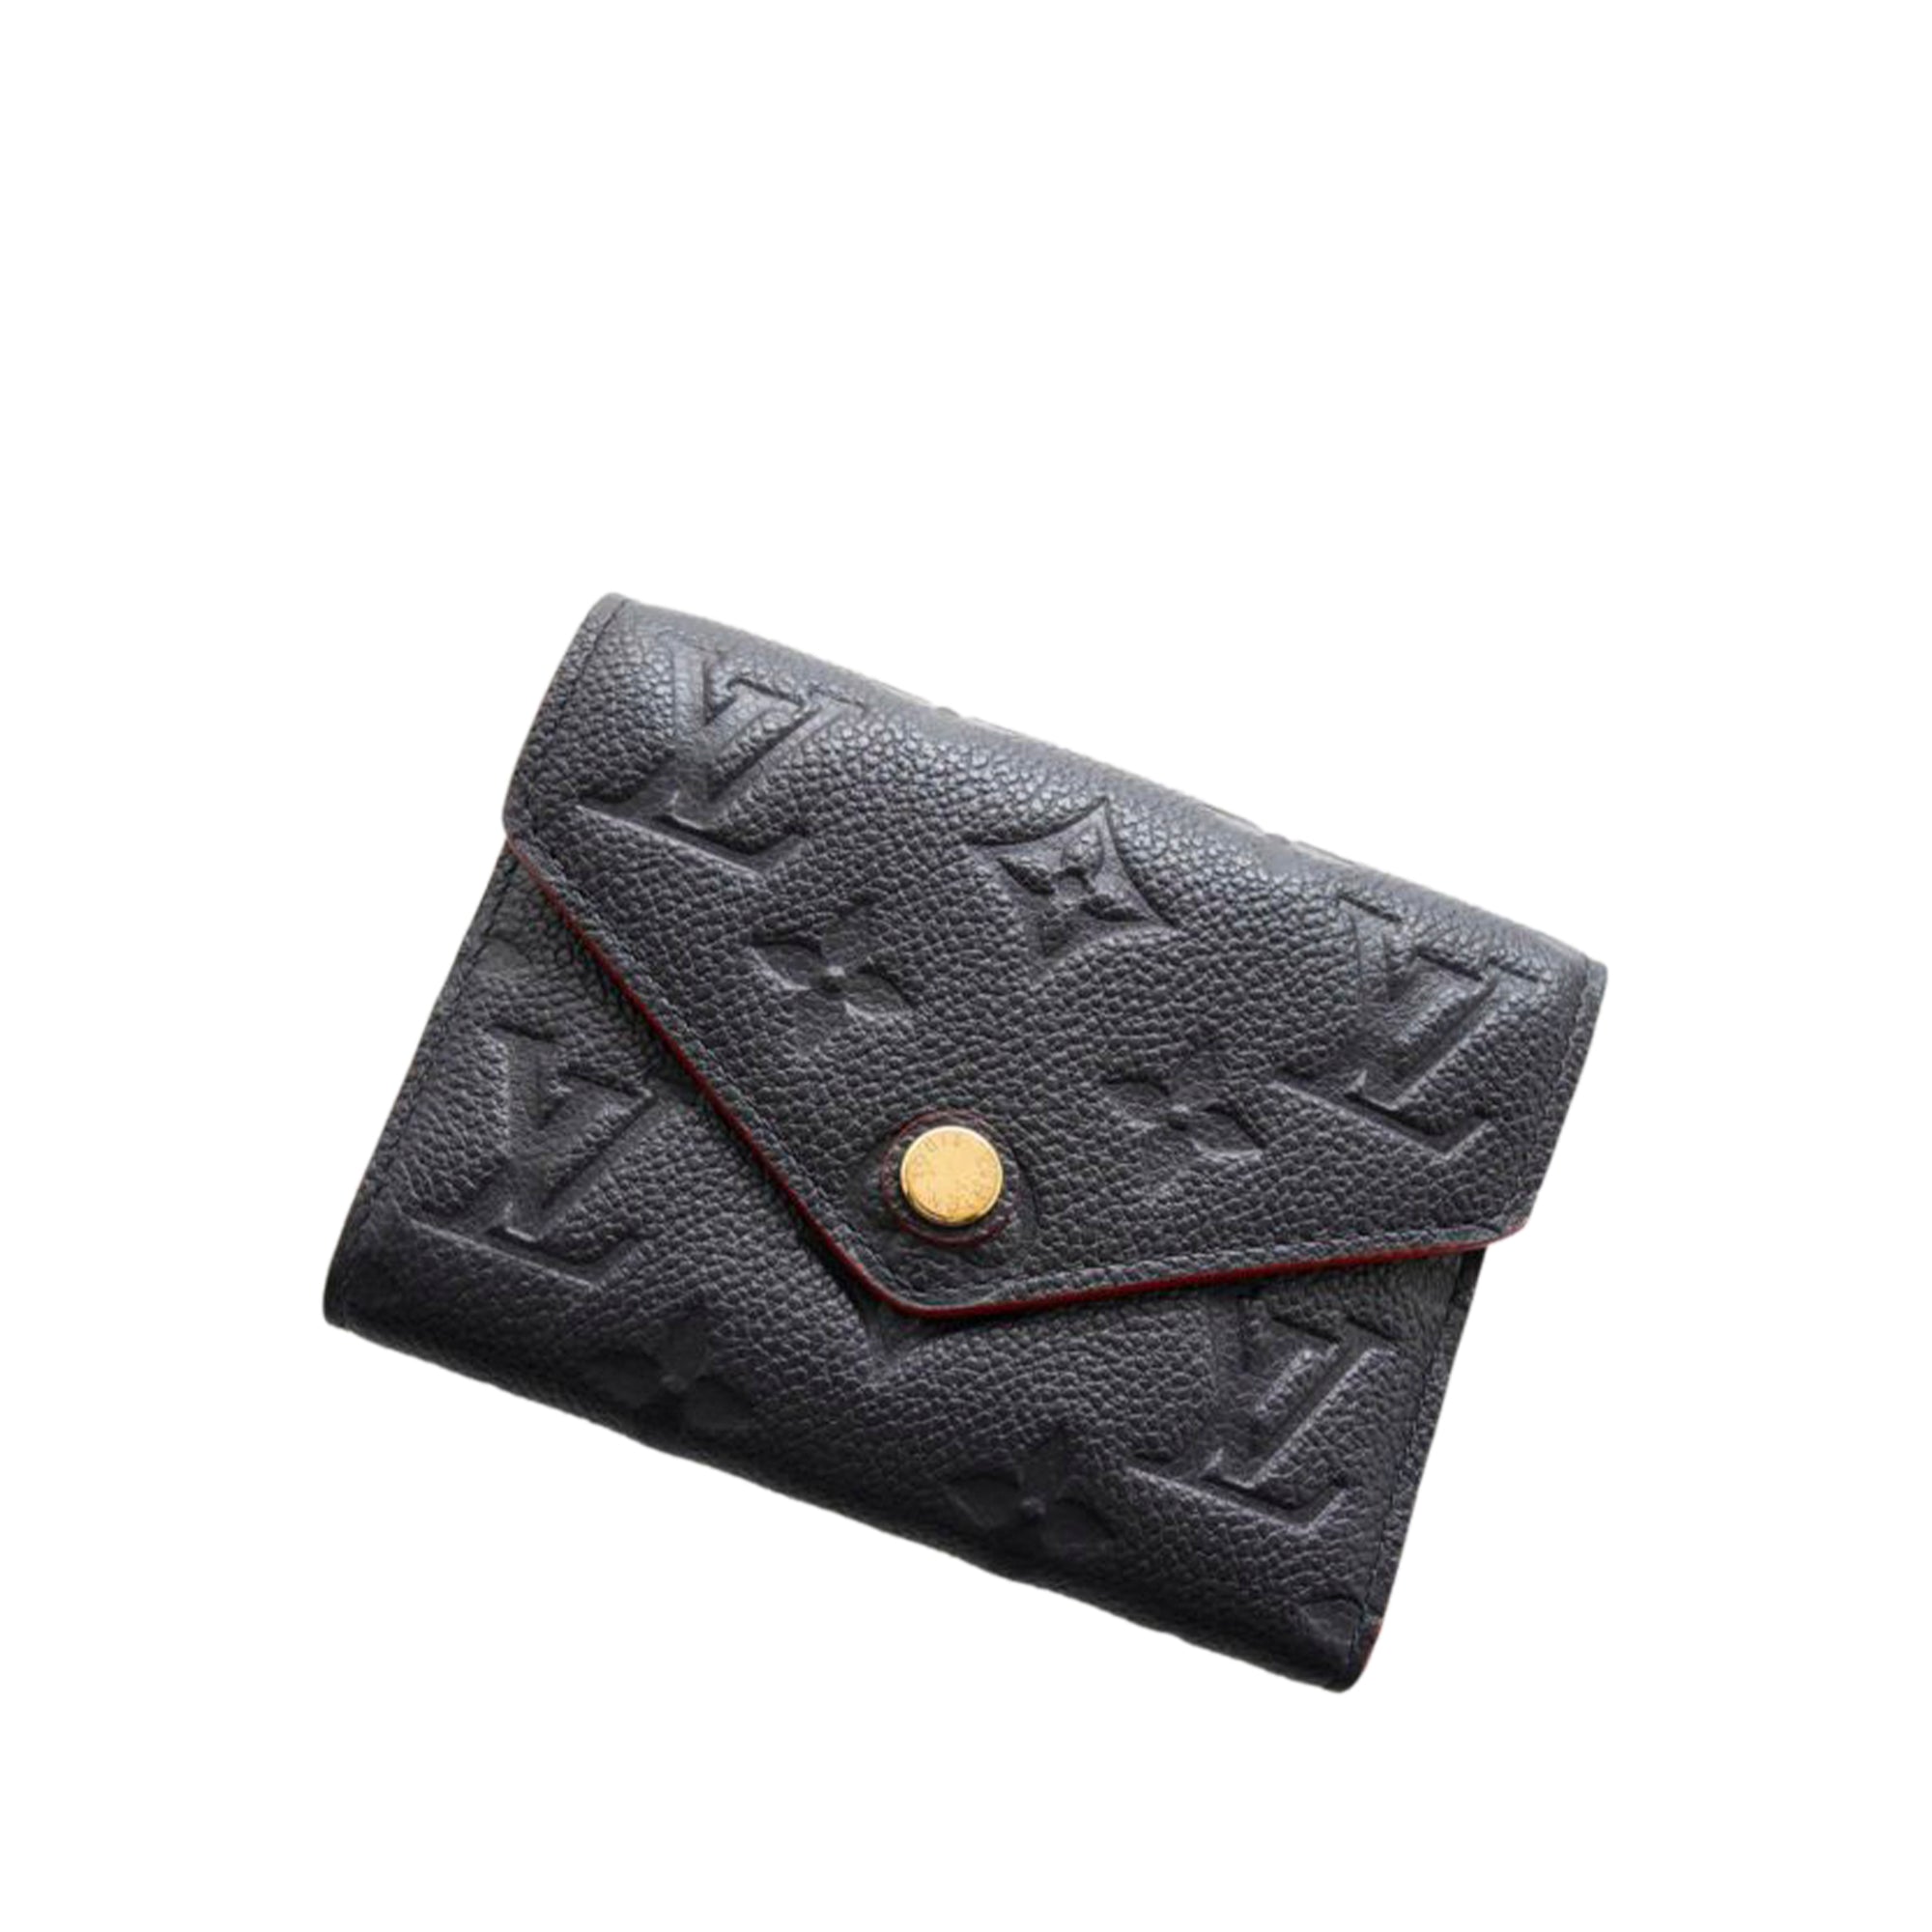 Louis Vuitton Black Empreinte Victorine Wallet QJAFFGLQKB000